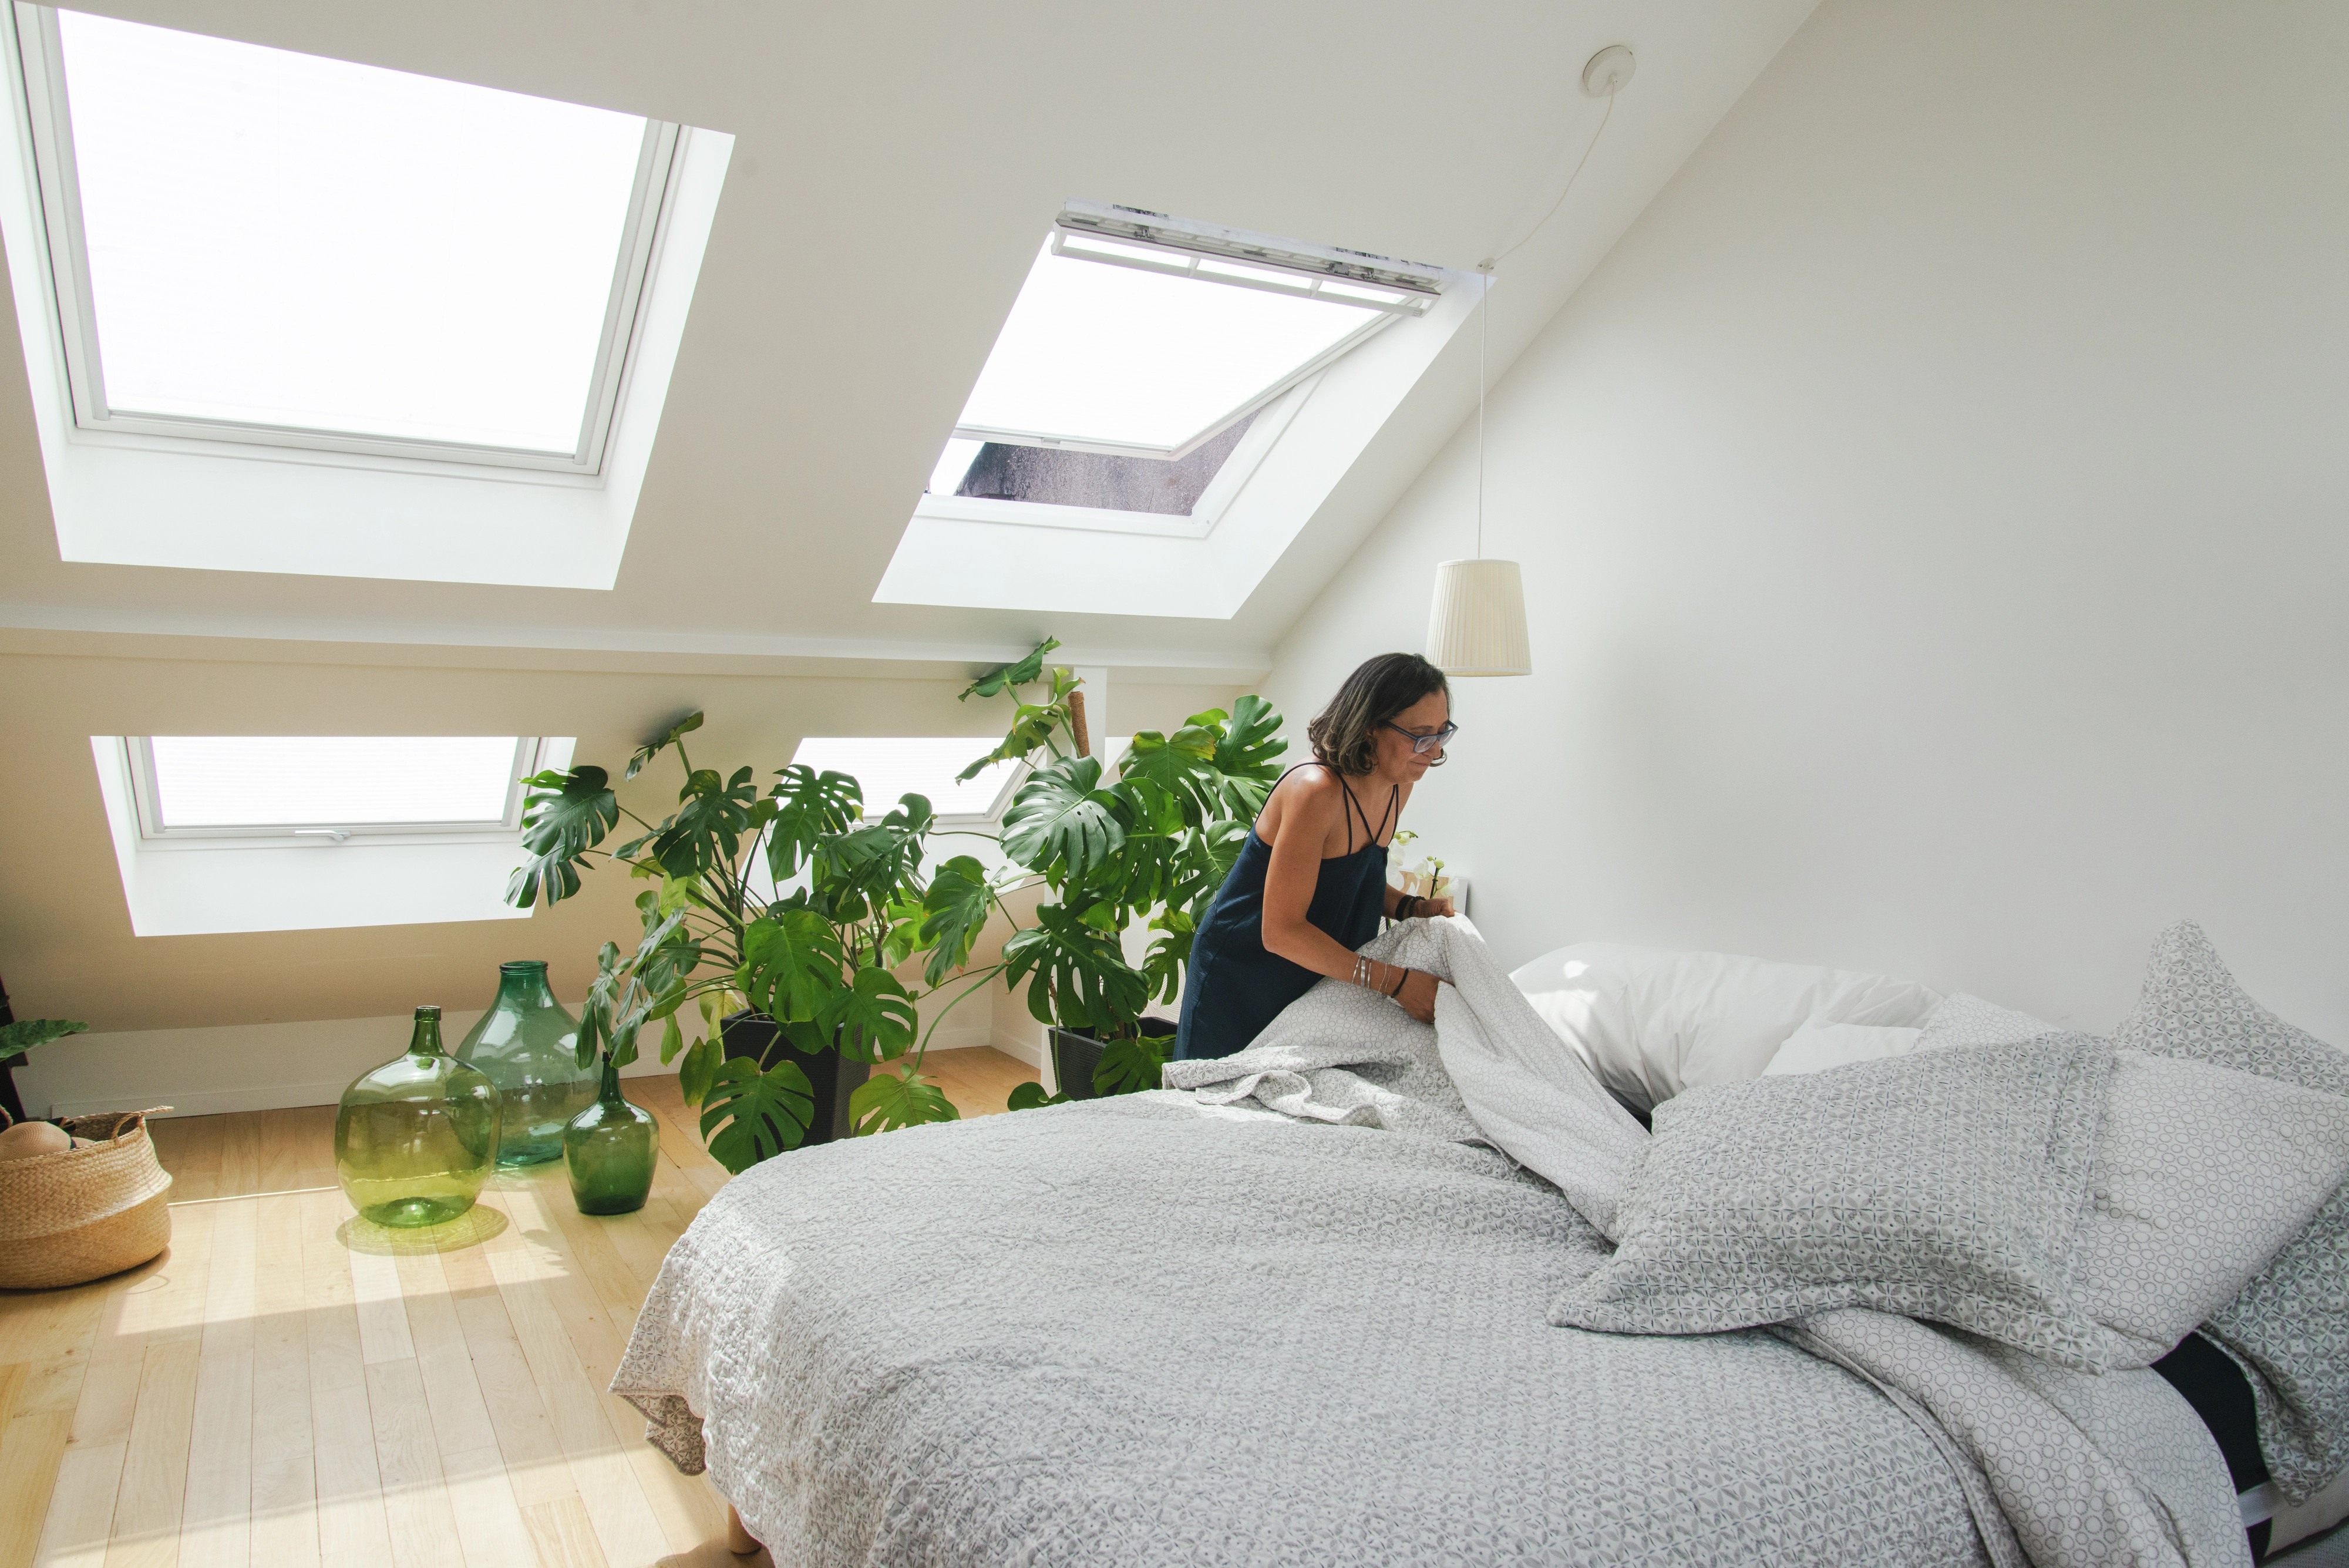 Camera da letto accogliente con luce naturale proveniente dalle finestre per tetti VELUX e piante verdi.